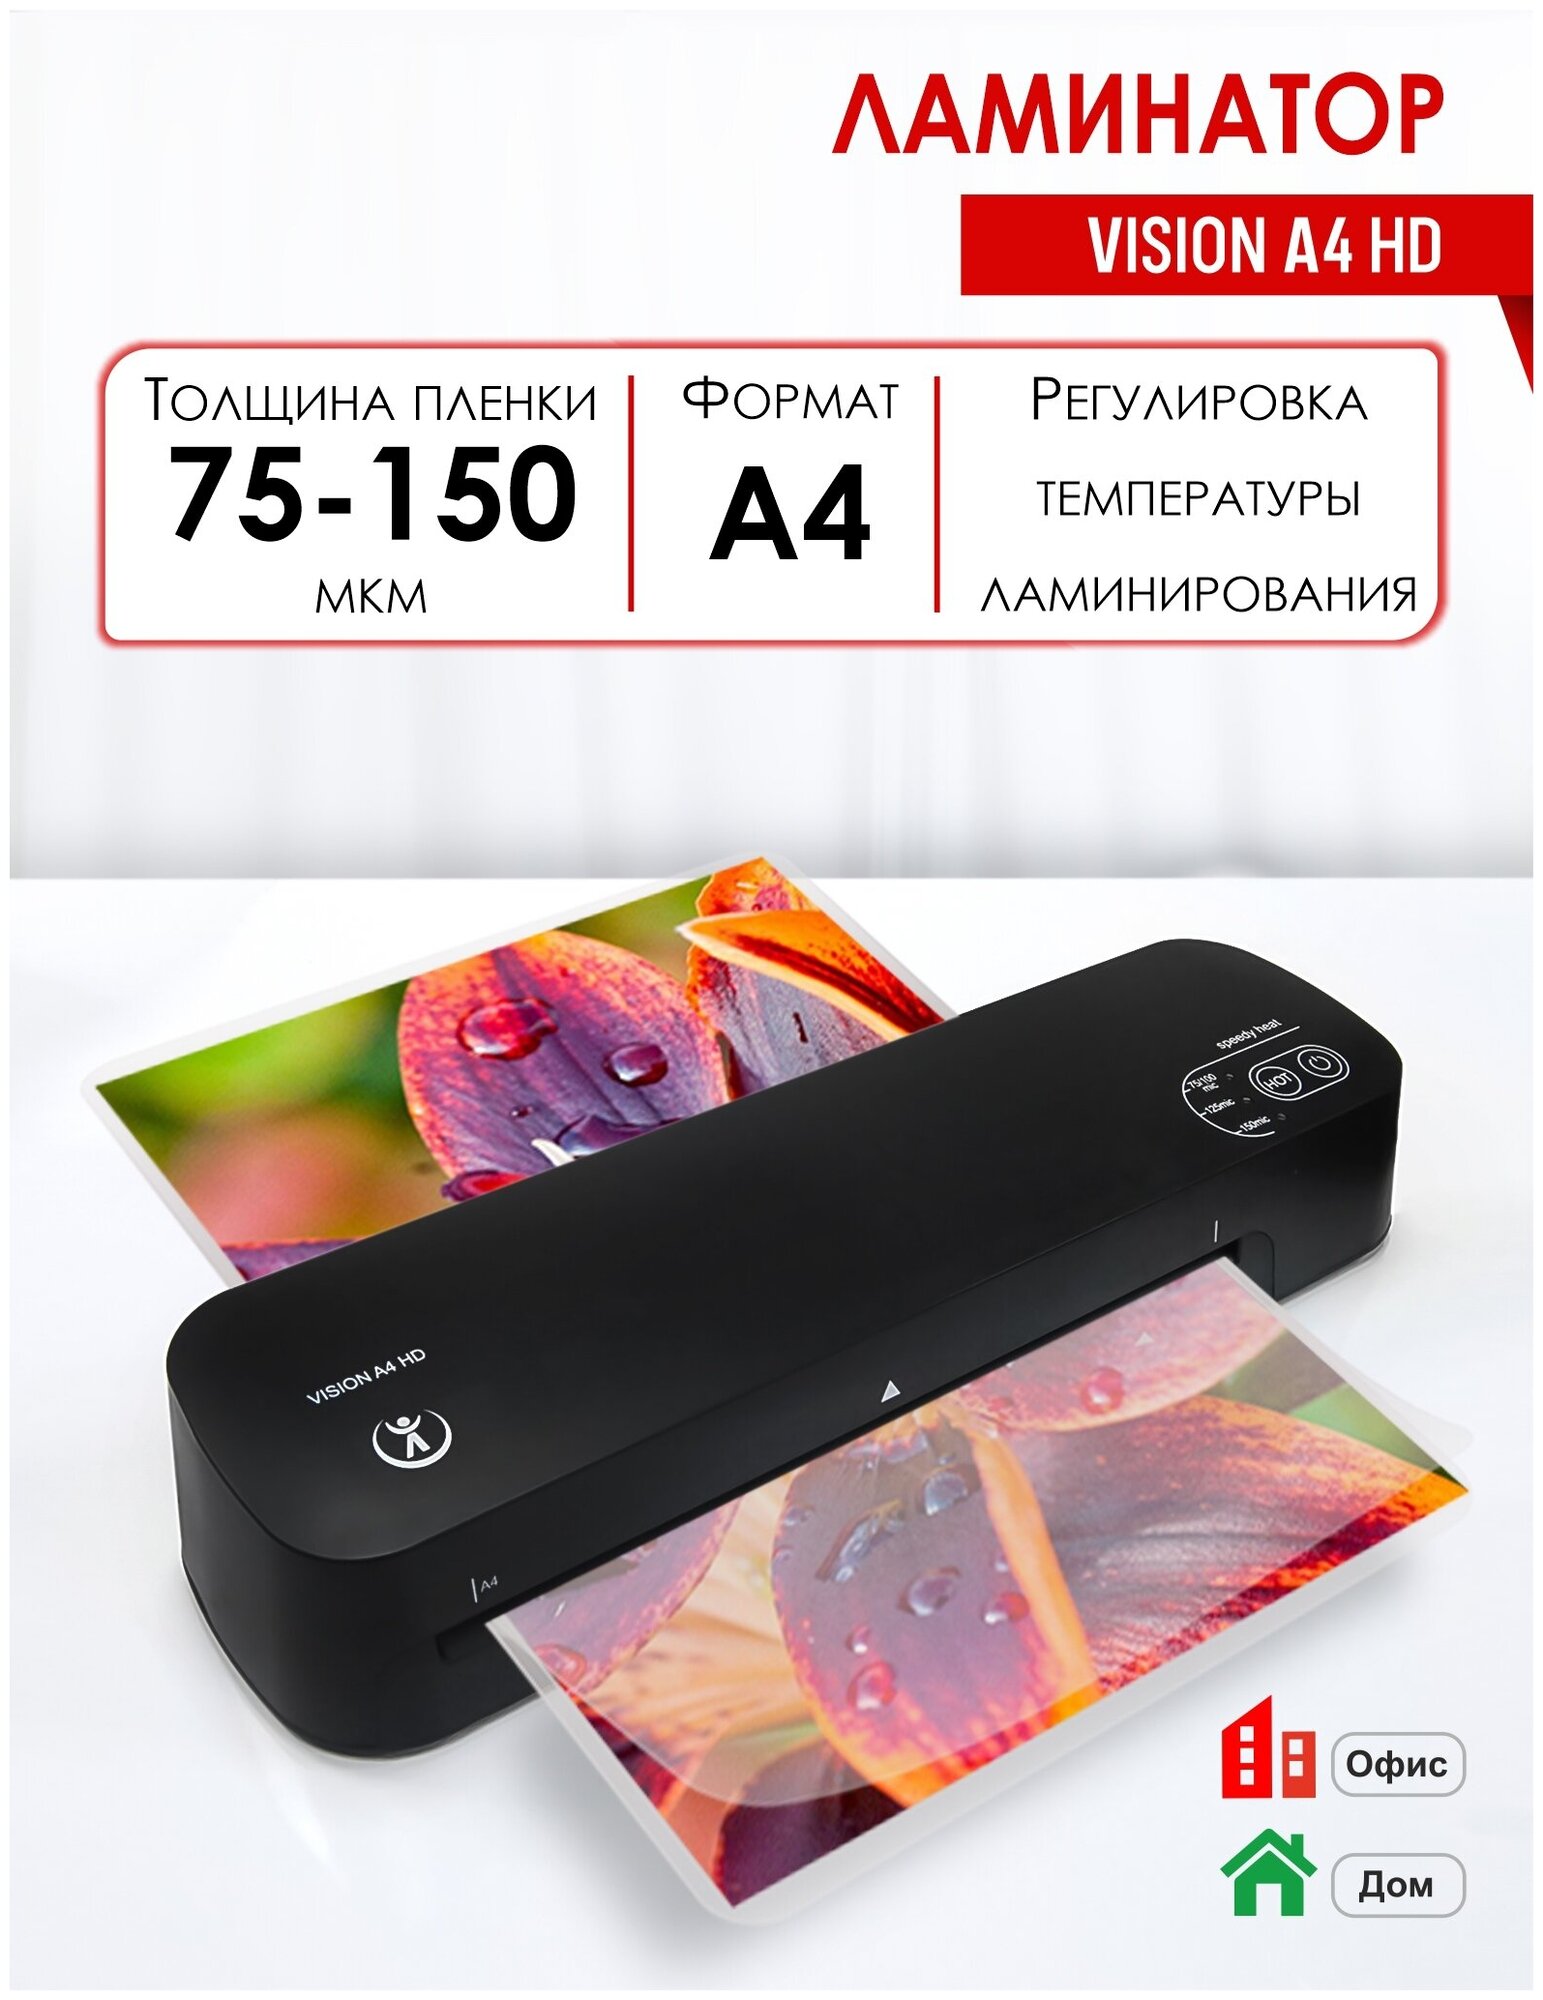 Ламинатор Vision A4 HD формат А4 офисный толщина пленки 75-150 мкм